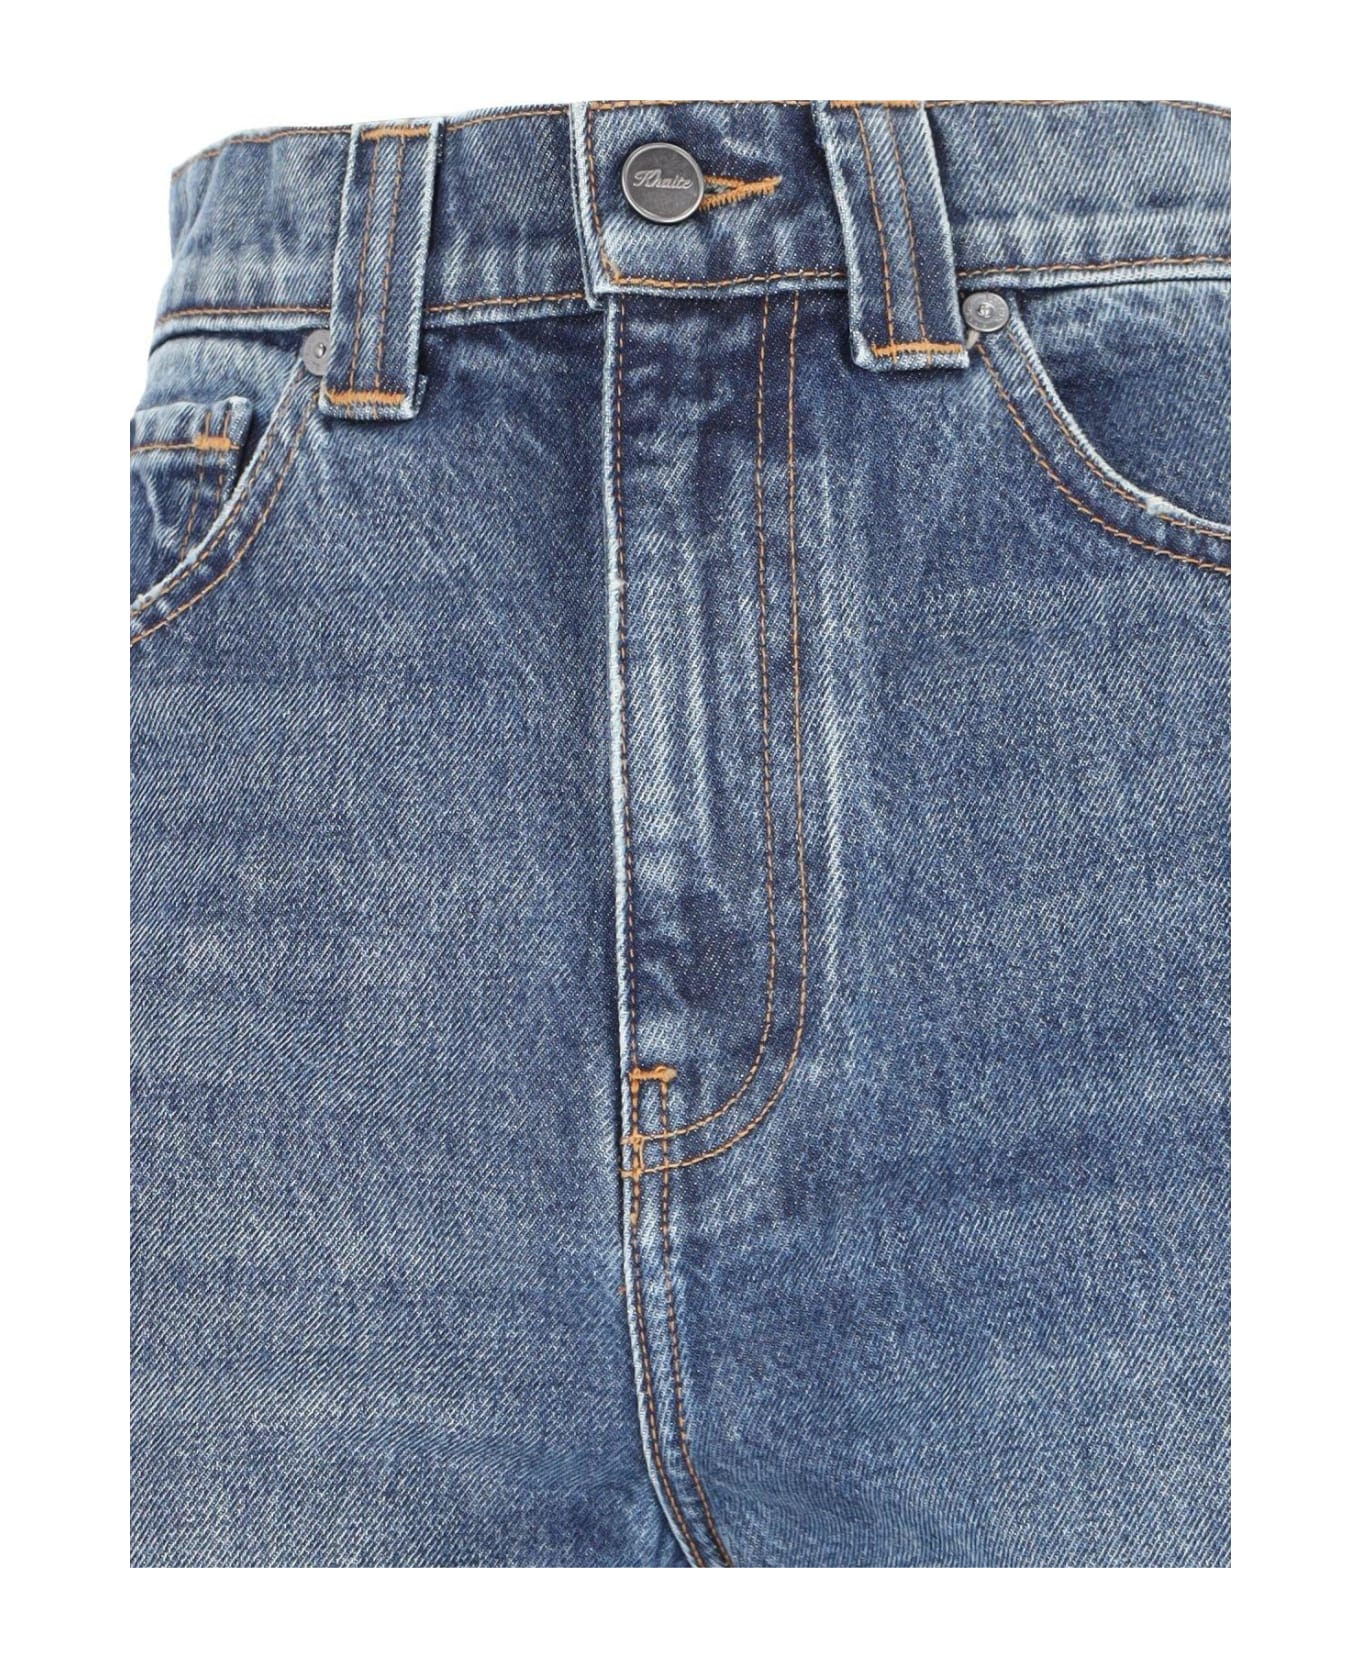 Khaite Albi High-waisted Jeans - Archer デニム